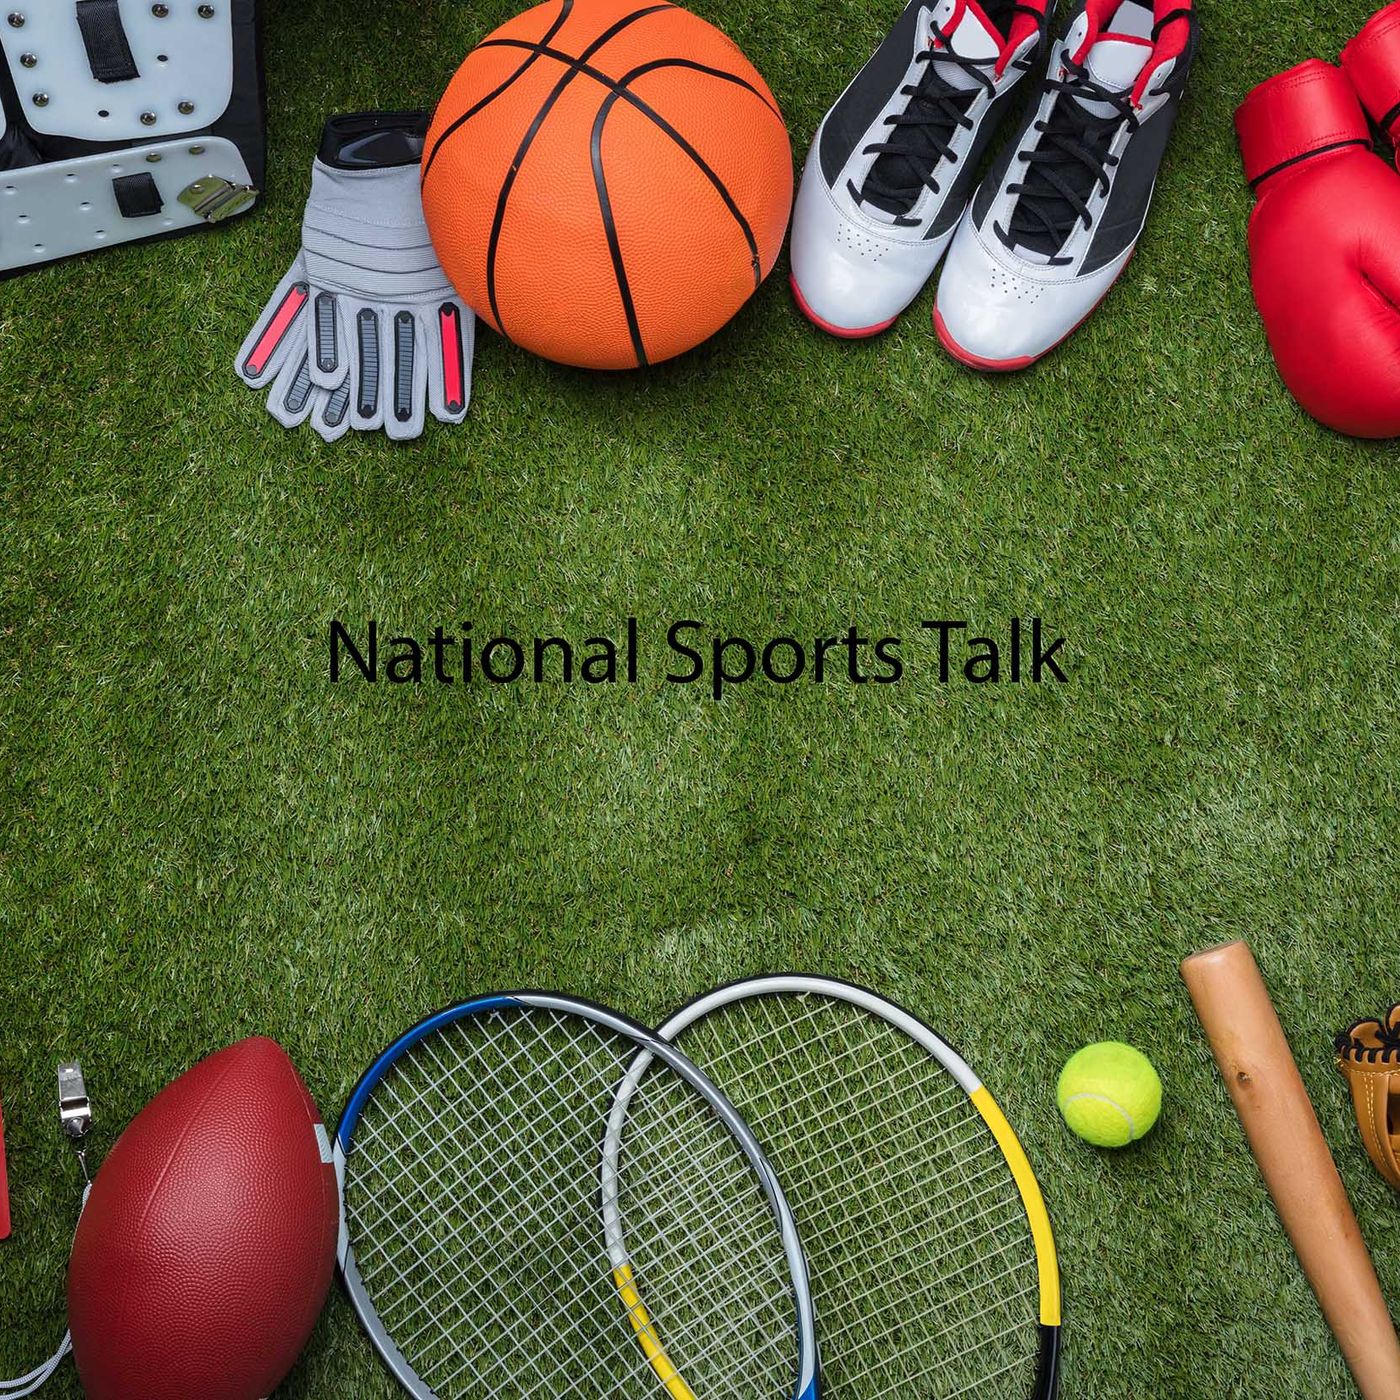 National Sports Talk